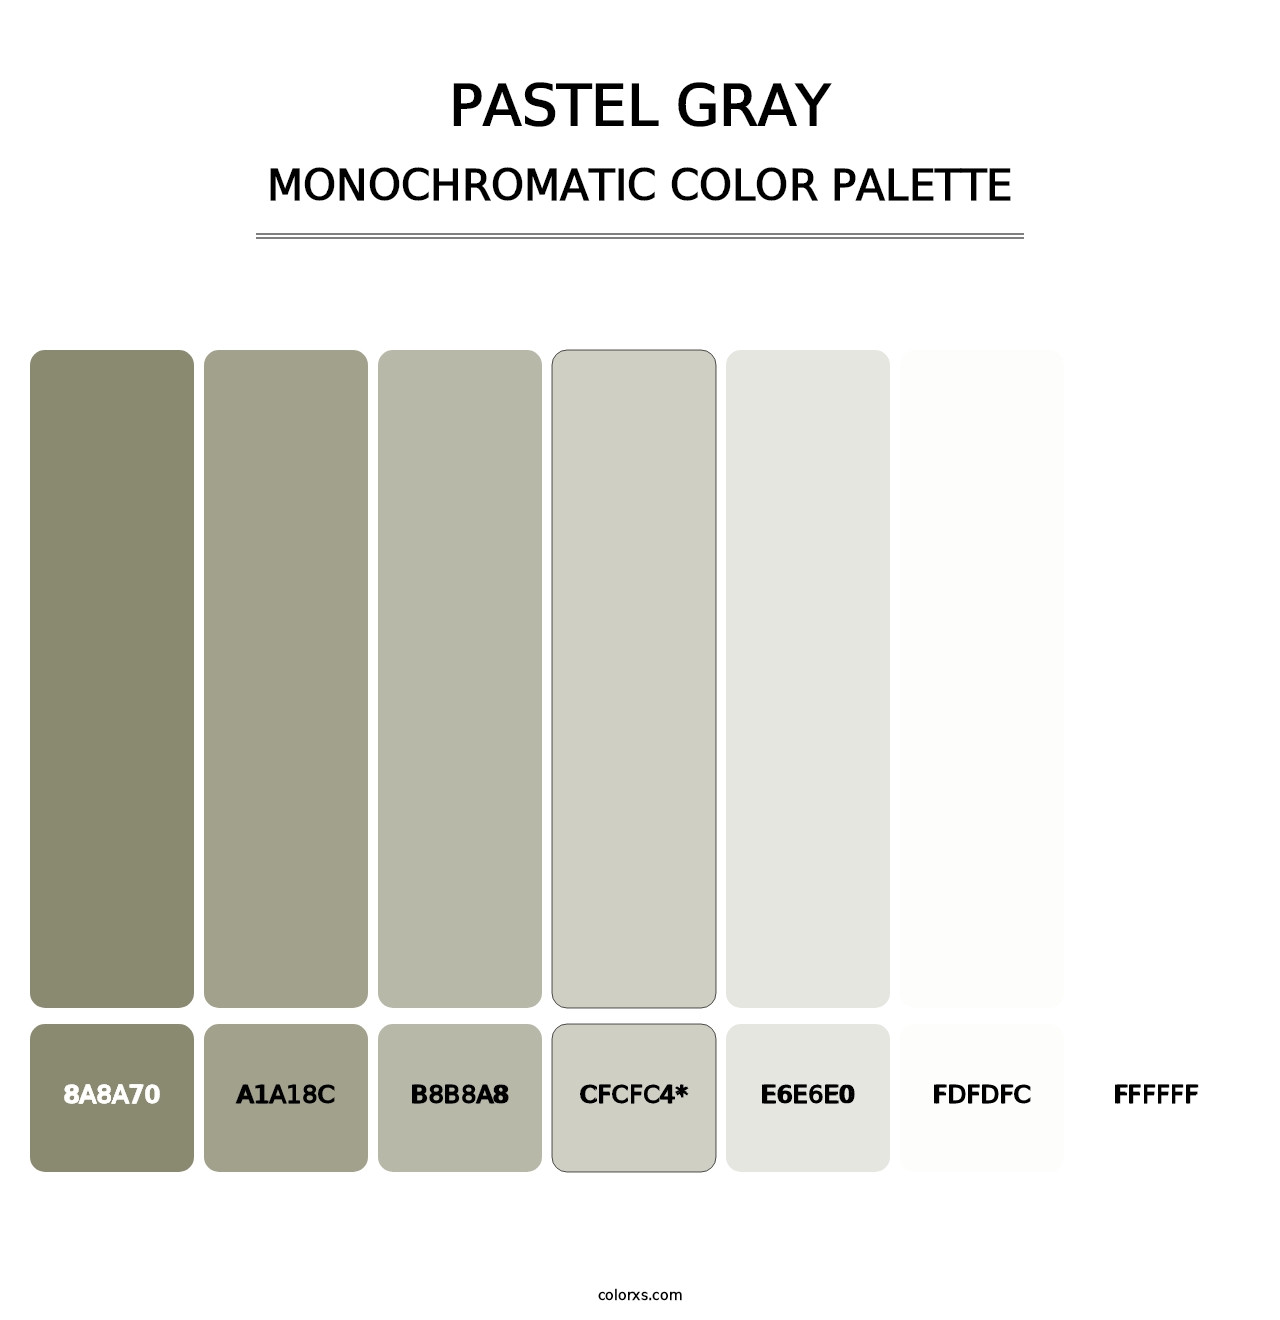 Pastel Gray - Monochromatic Color Palette